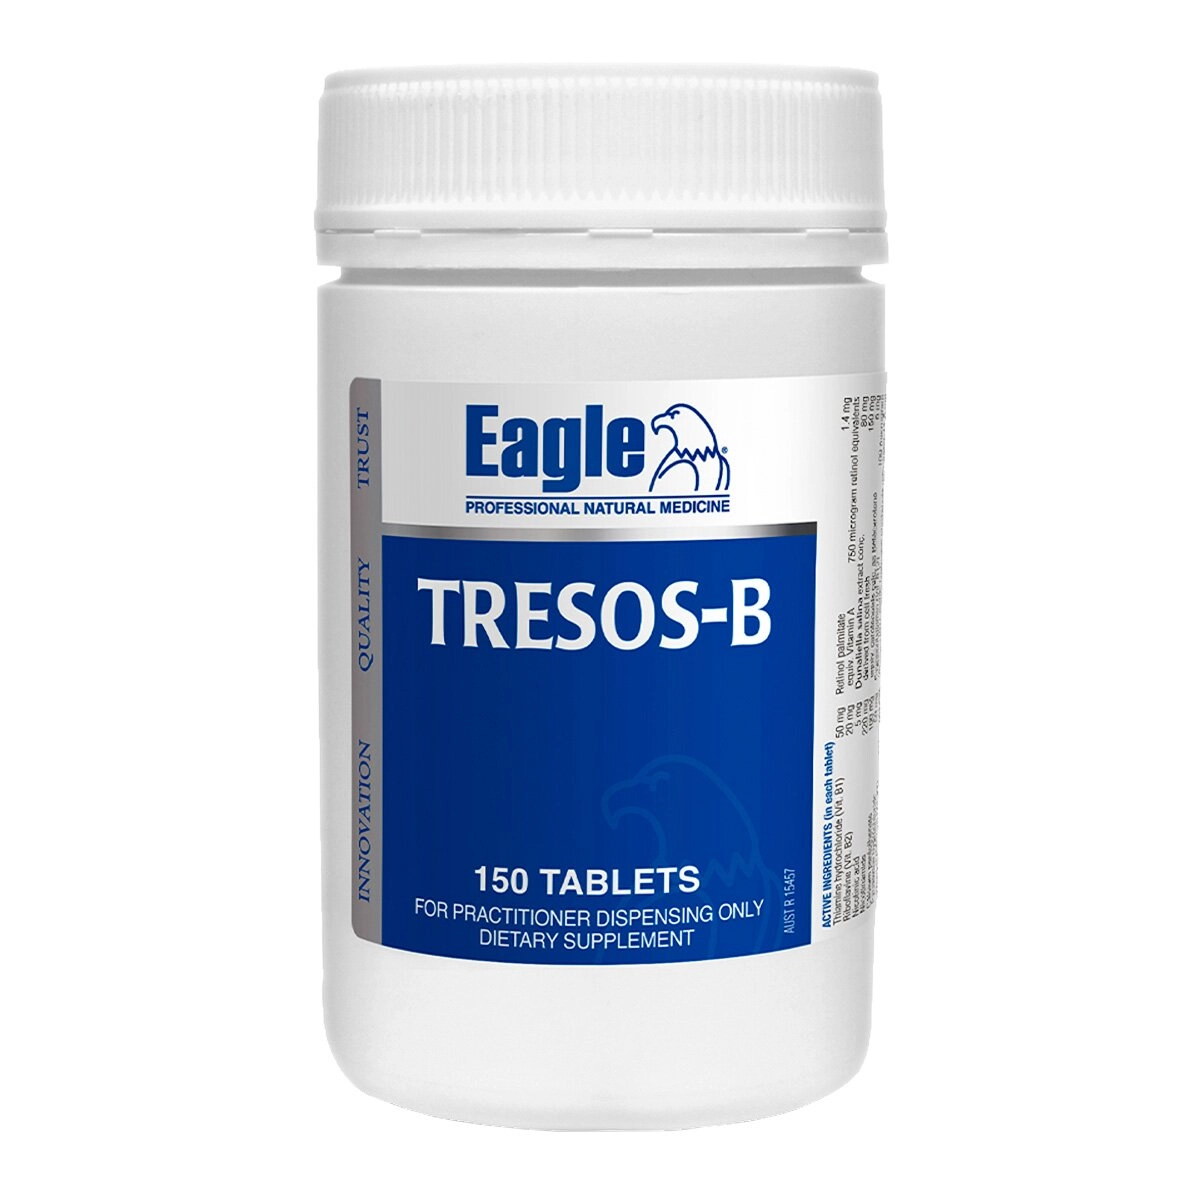 EAGLE - Tresos-B 150tab(s)